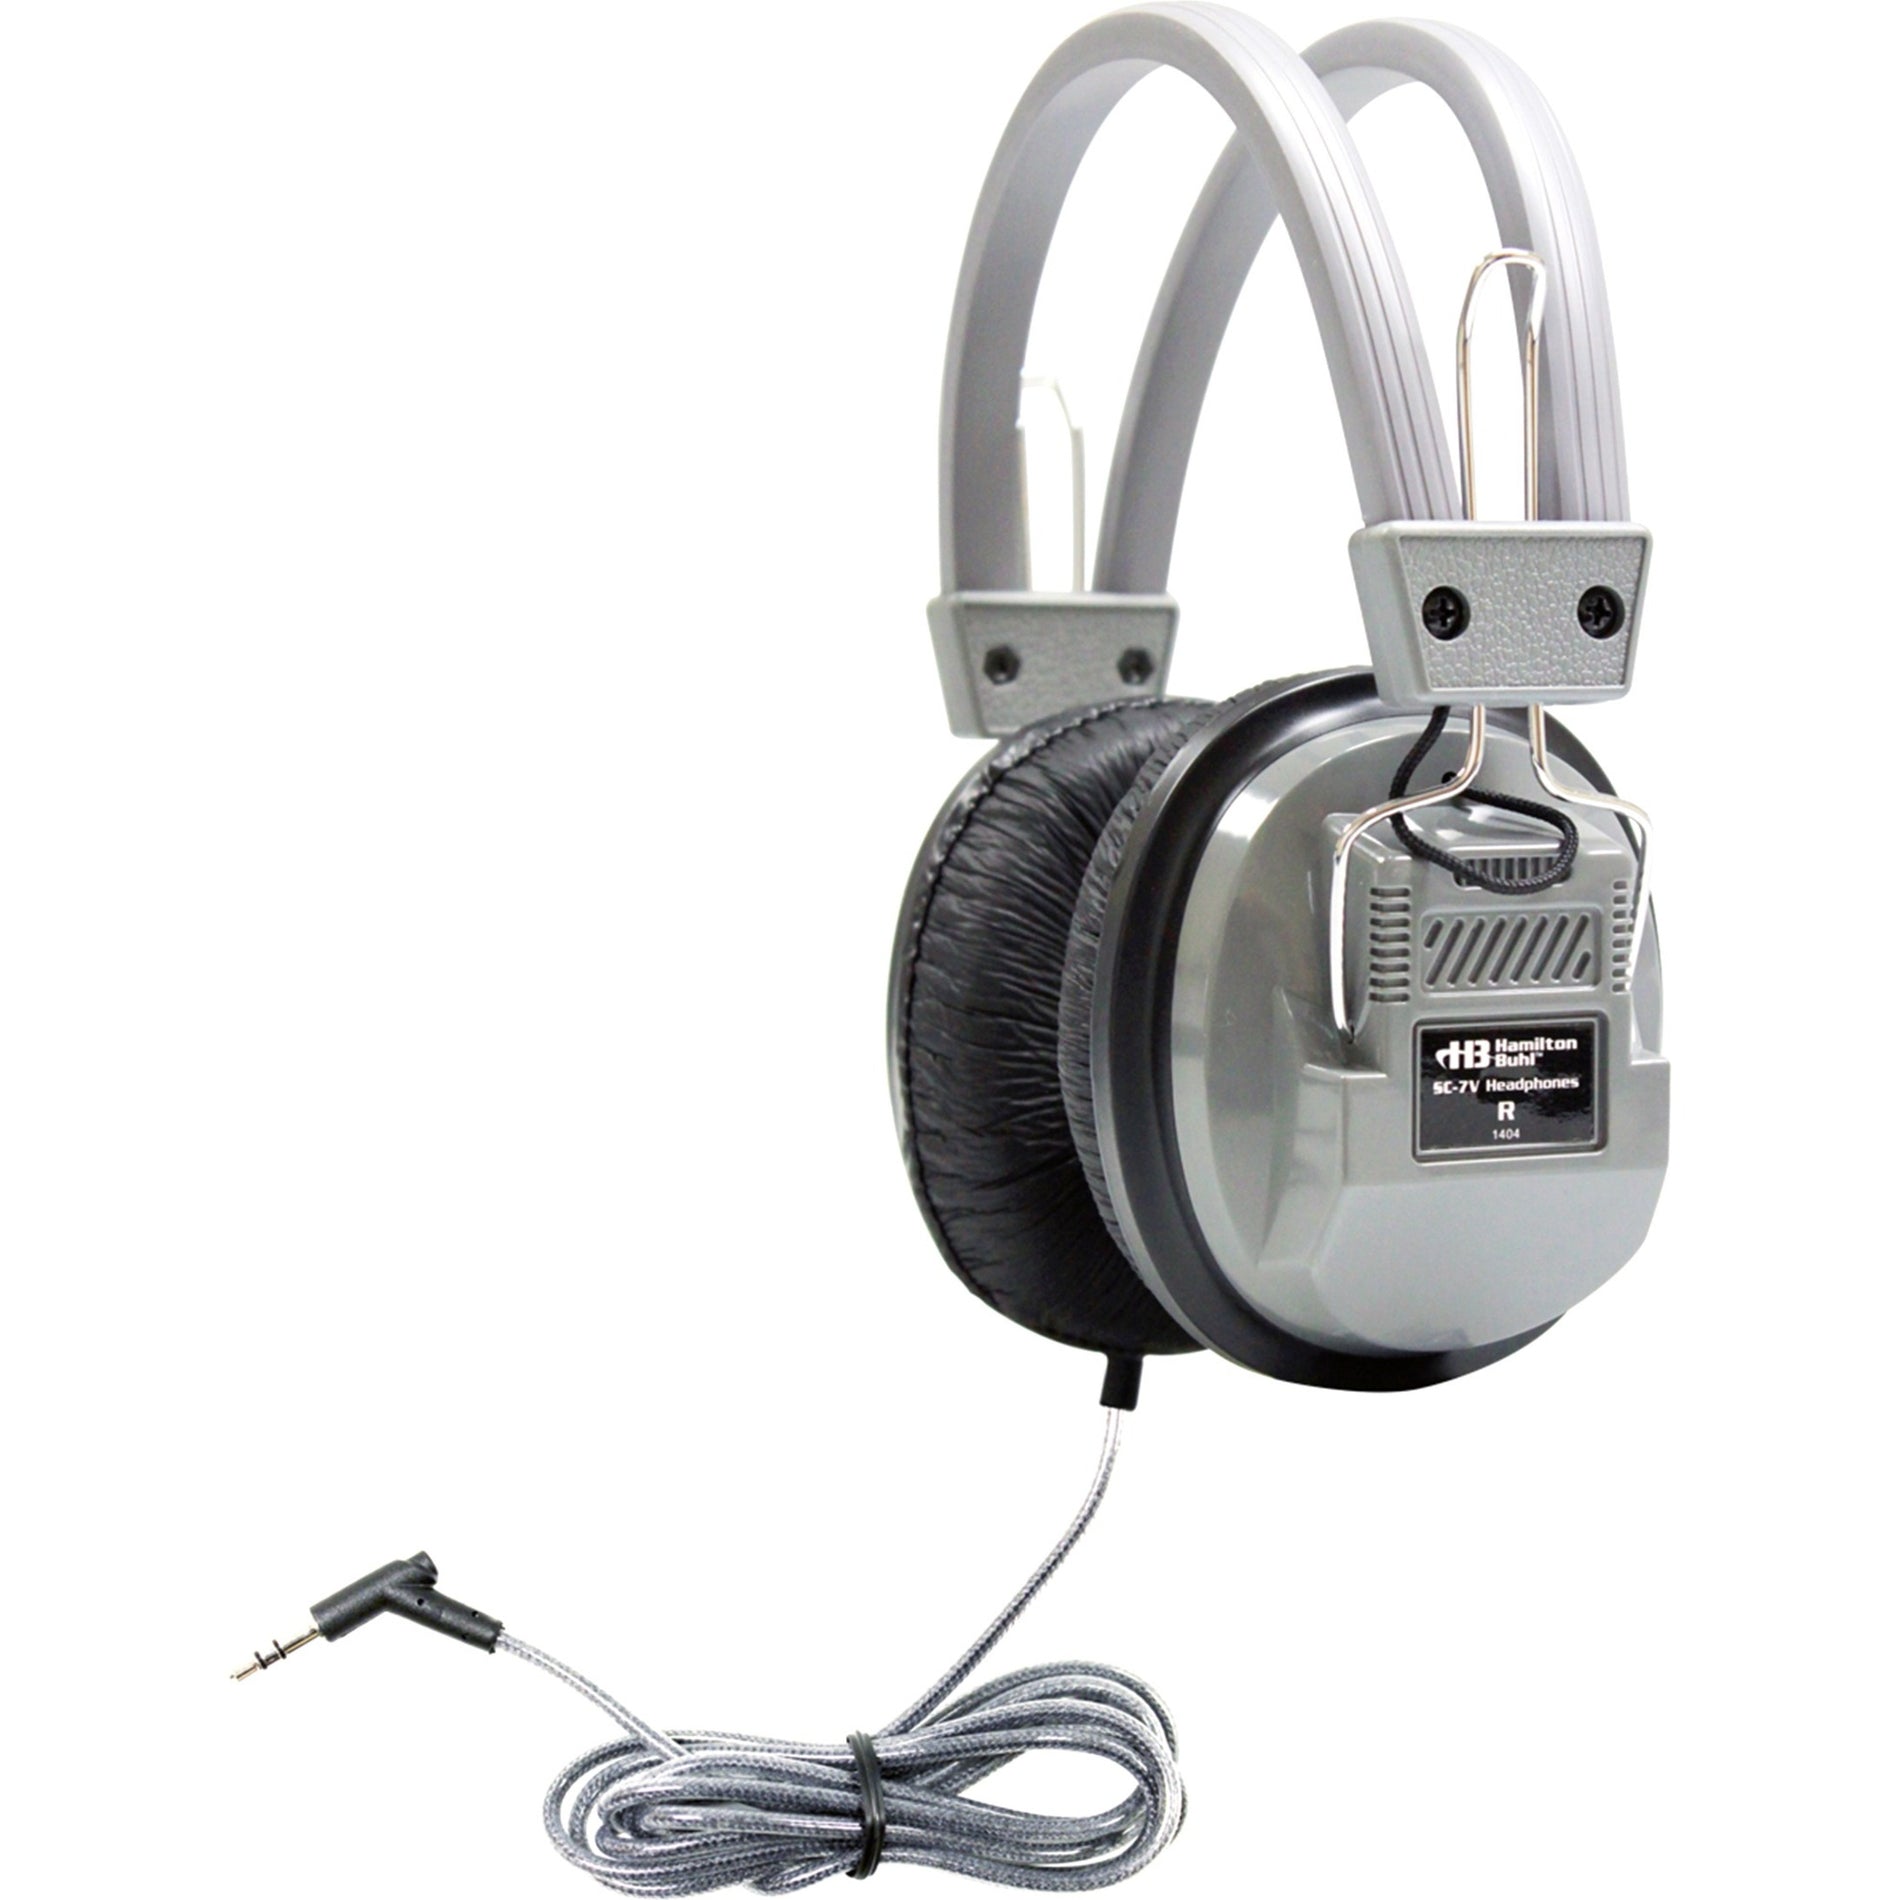 品牌名称：Hamilton Buhl  学友豪华立体声耳机 3.5毫米接口和音量 耳罩式耳机，隔音效果好 防缠绕电缆和坚固设计